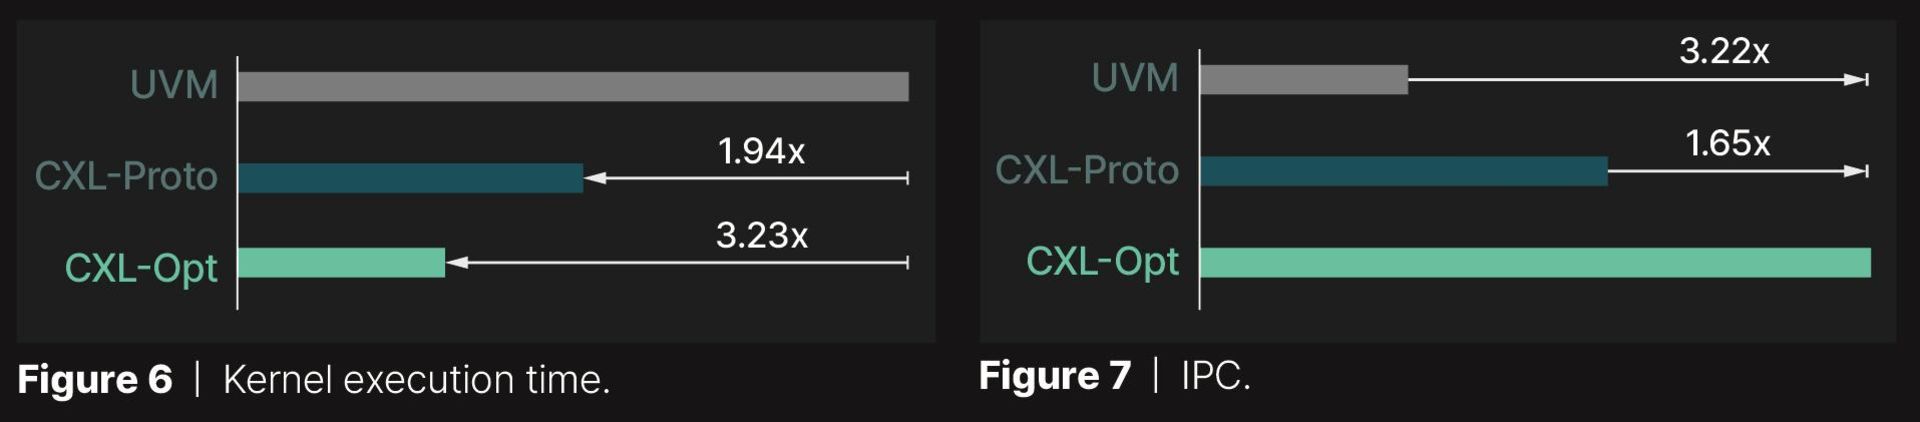 نرخ تأخیر عملکرد روش CXL-OPT برای افزایش حافظه ویدویی